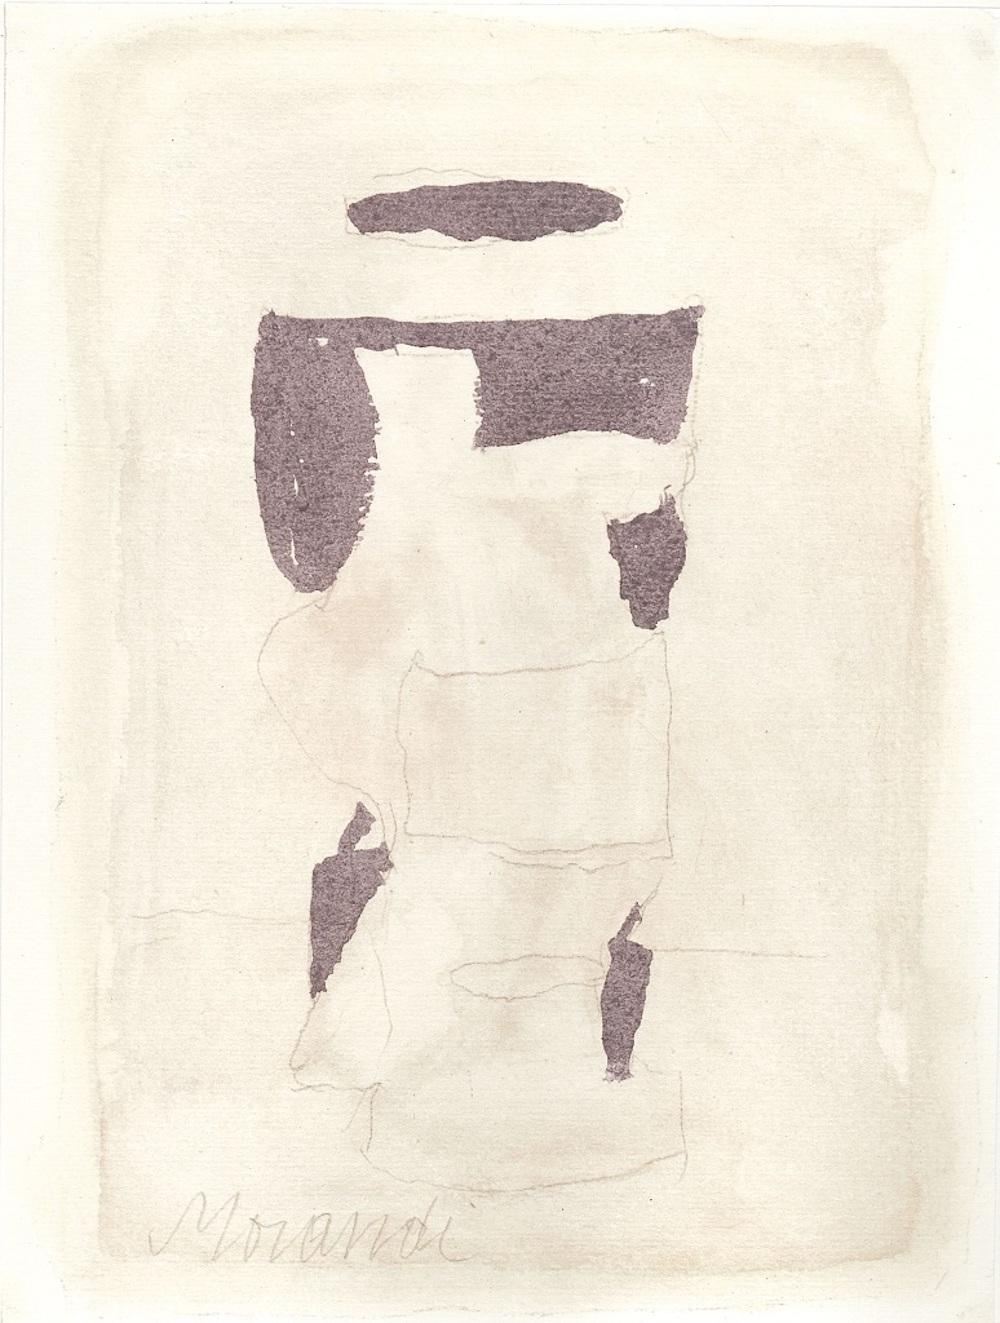 Dimensions de l'image : 21 x 16 cm.

Still Life est une admirable impression offset originale, reproduisant l'aquarelle originale de Giorgio Morandi.

La signature au crayon de l'artiste est également parfaitement reproduite.

Tiré du volume